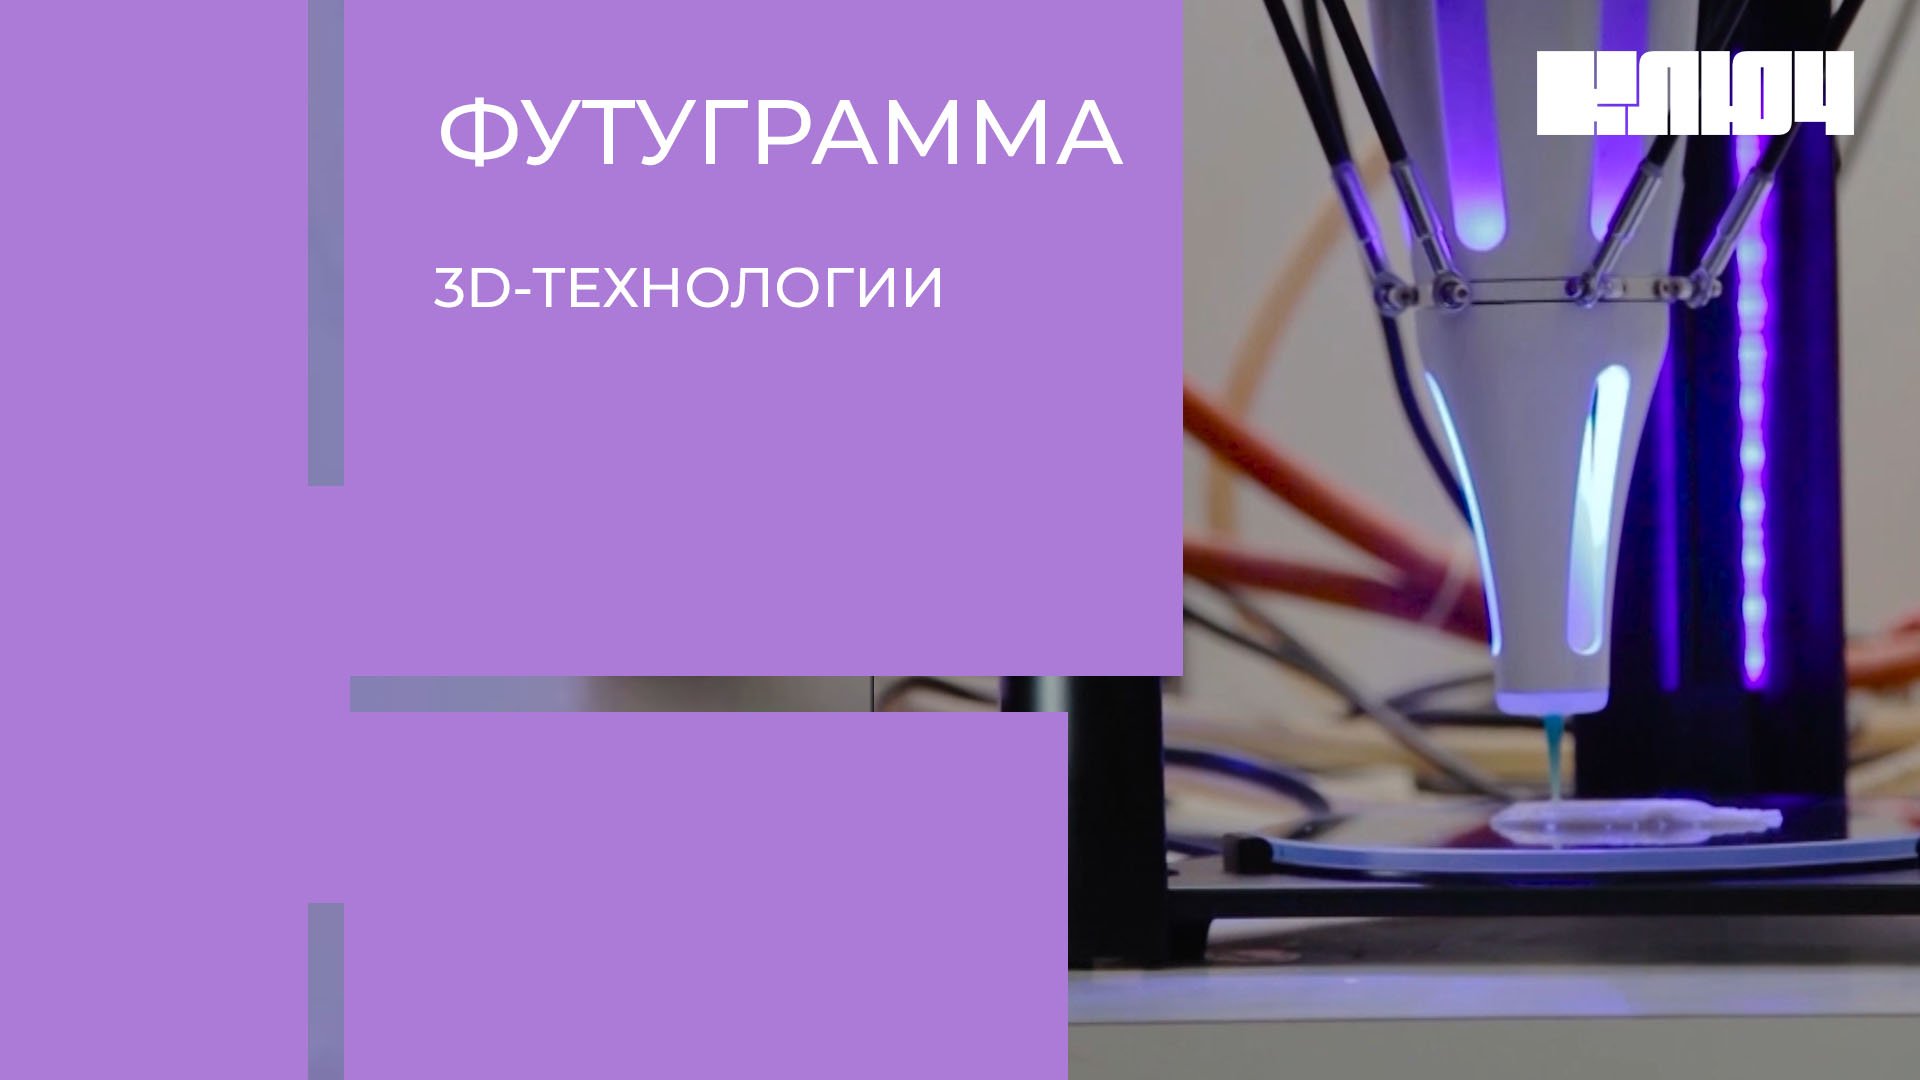 3D-принтер может напечатать тебе дом, одежду, еду и даже органы! 3D-технологии в России | Футуграмма